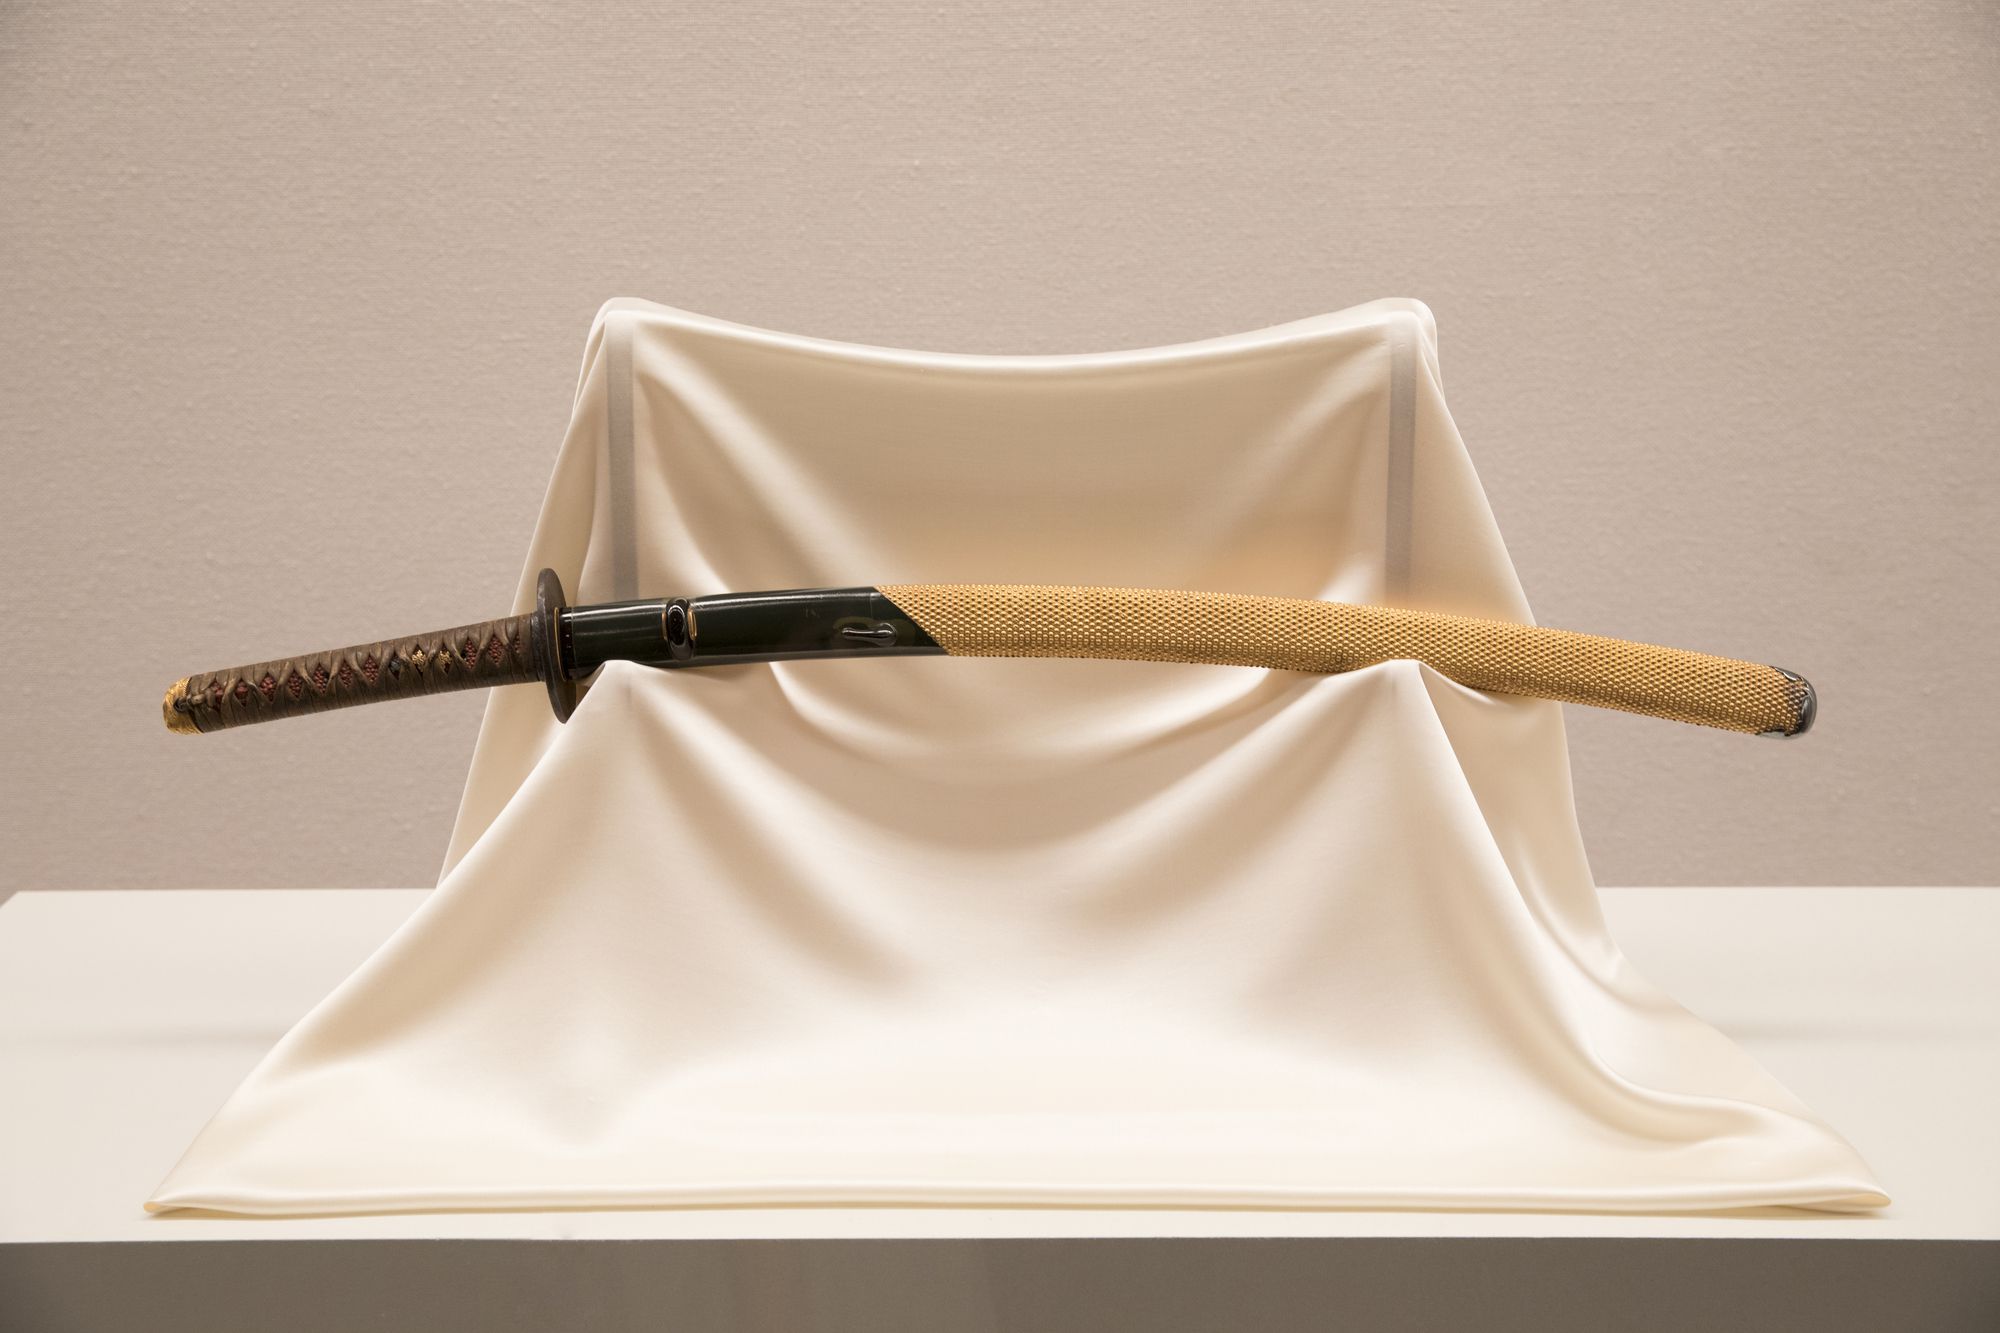 日本刀の飾り方に決まりはある 日本刀 刀剣買取業者おすすめランキング 相場を参考に厳選